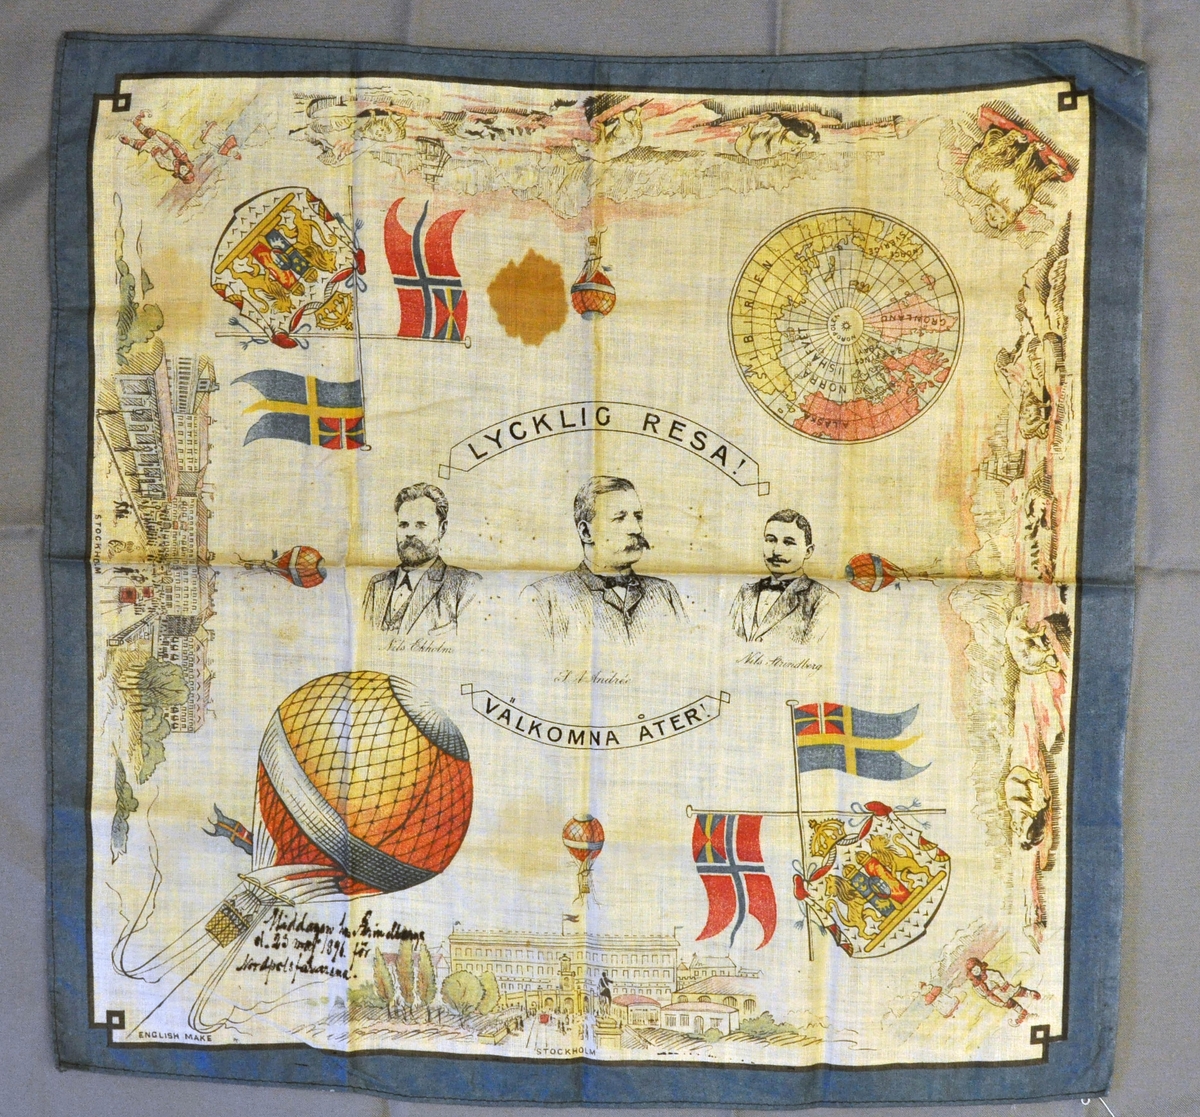 Fyrkantig näsduk med motiv av Nils Ekholm, S A Andrée Strindberg; Stockholmsmotiv, islandskap, isbjörnar, ballong och unionsflaggor. Tryck: "Lycklig resa! Välkomna åter!"